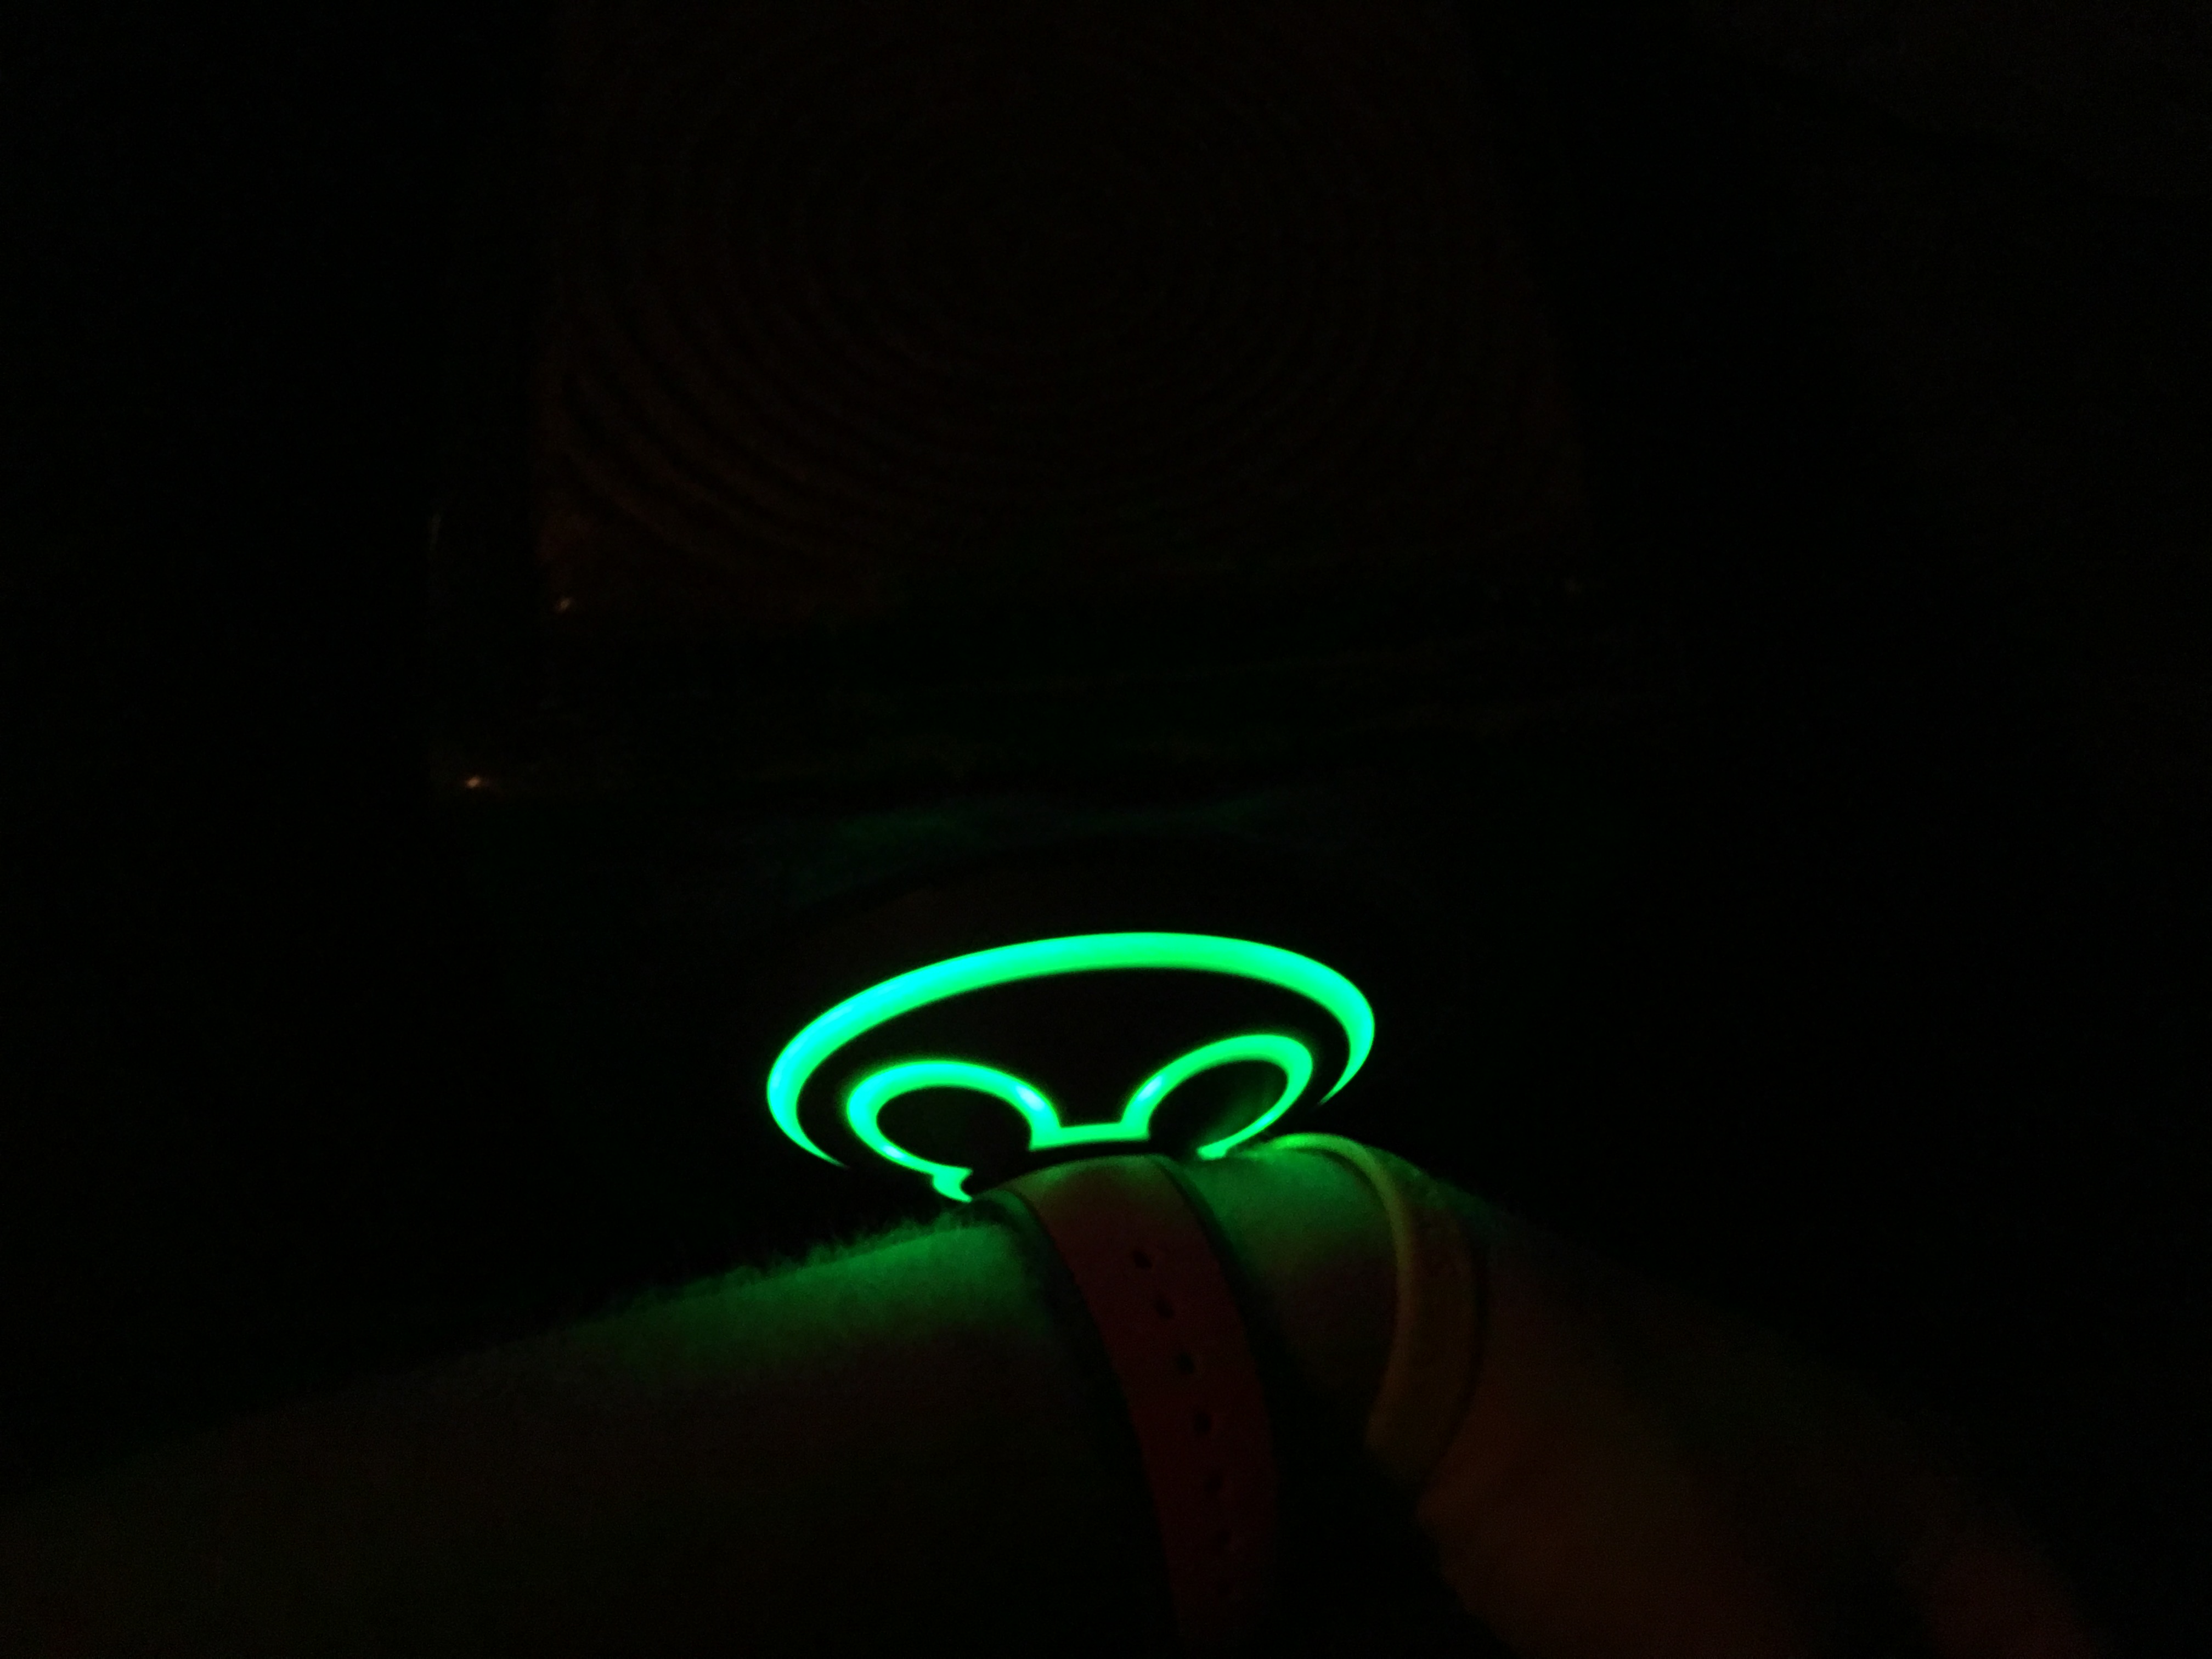 a green light on a wrist watch